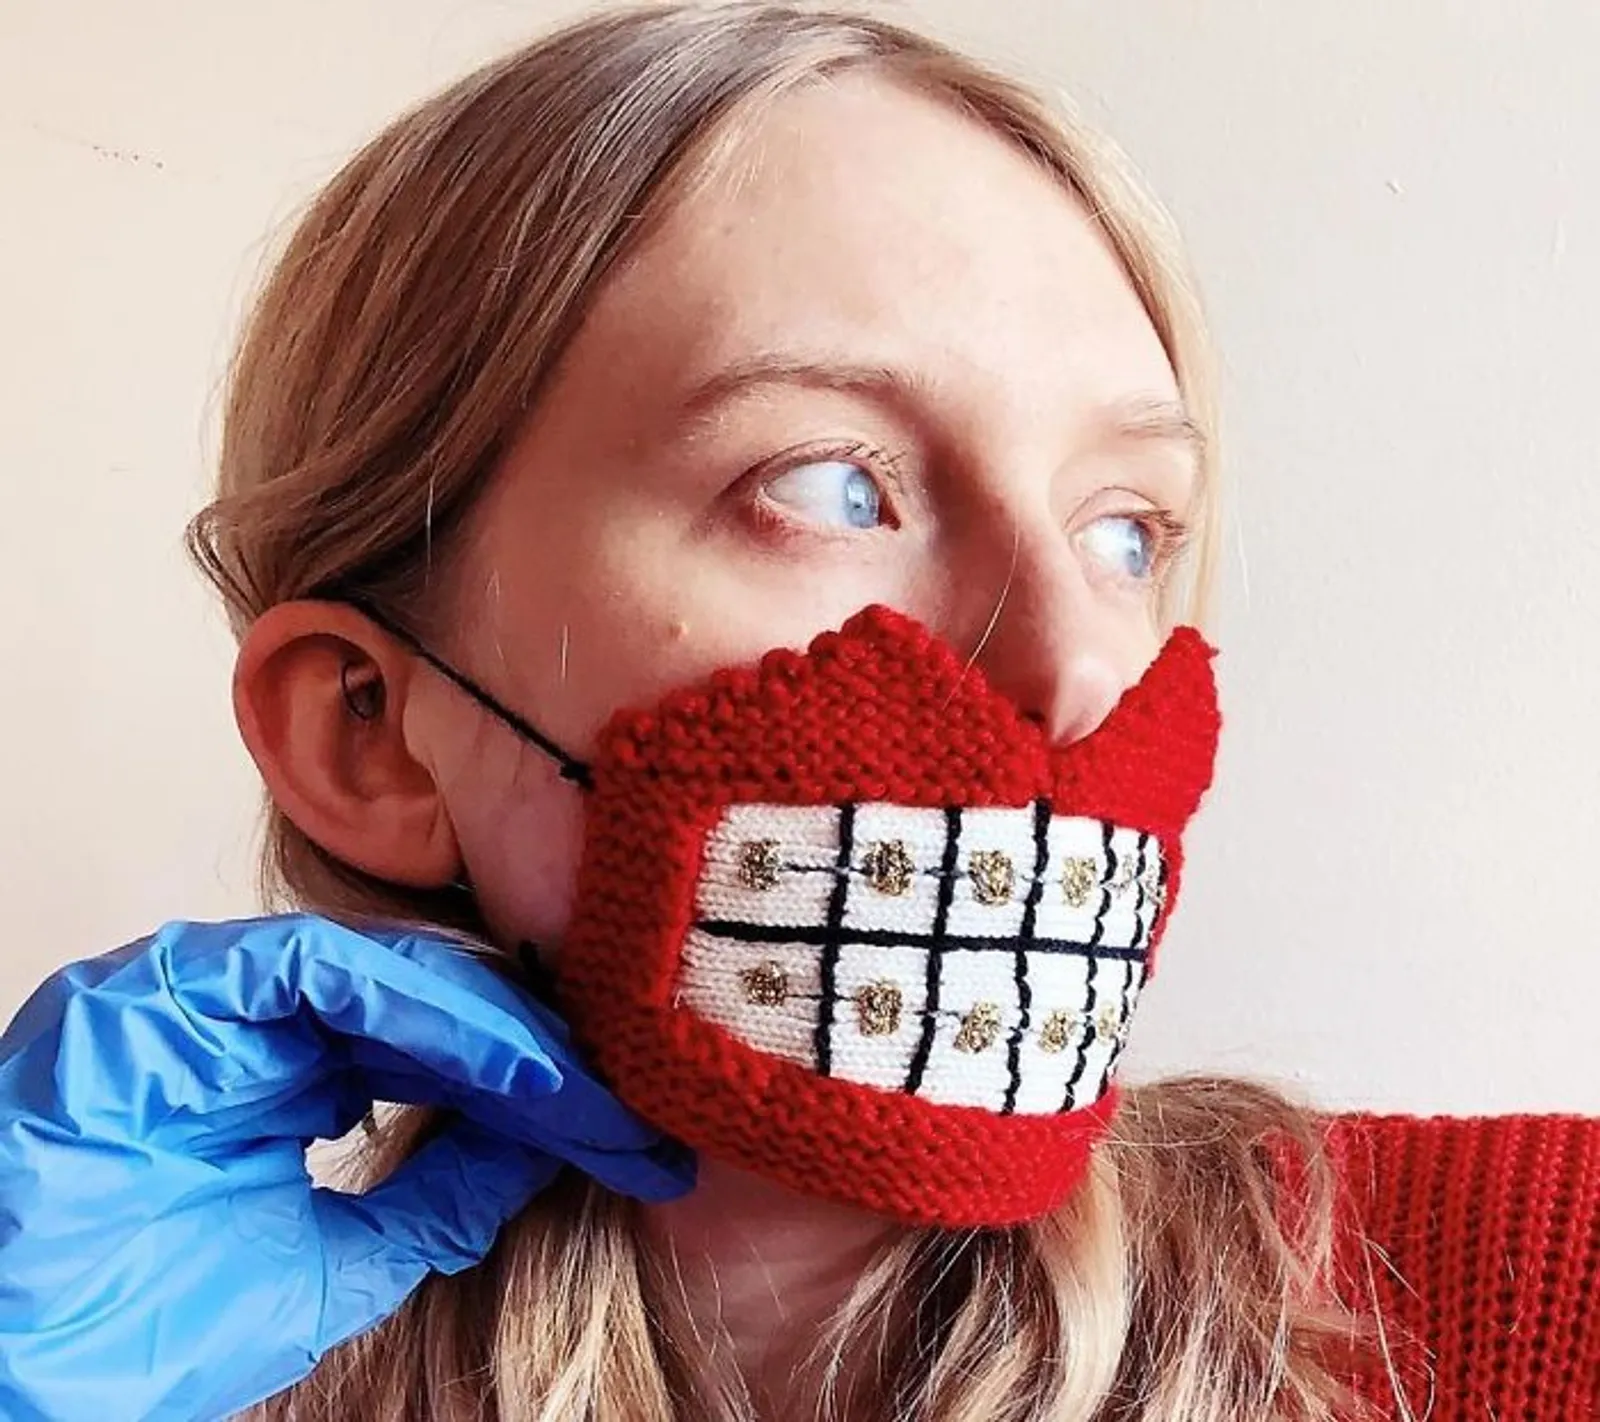 Tampil Beda dengan 7 Masker Artistik yang Anti Mainstream